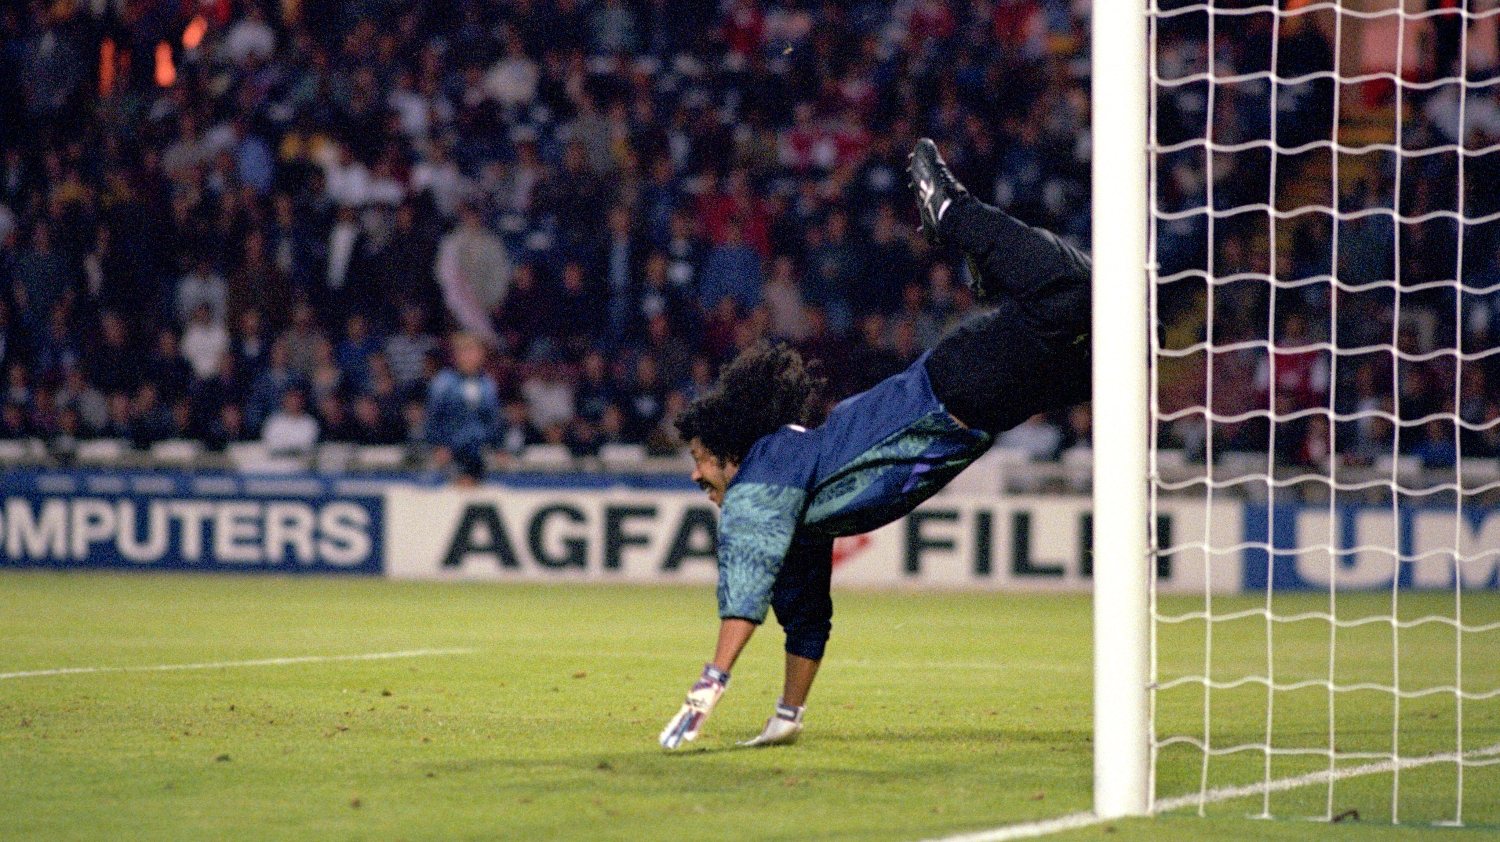 René Higuita deu um salto para a história quando arriscou a célebre &quot;Defesa do Escorpião&quot; num particular entre Colômbia e Inglaterra em pleno Estádio de Wembley